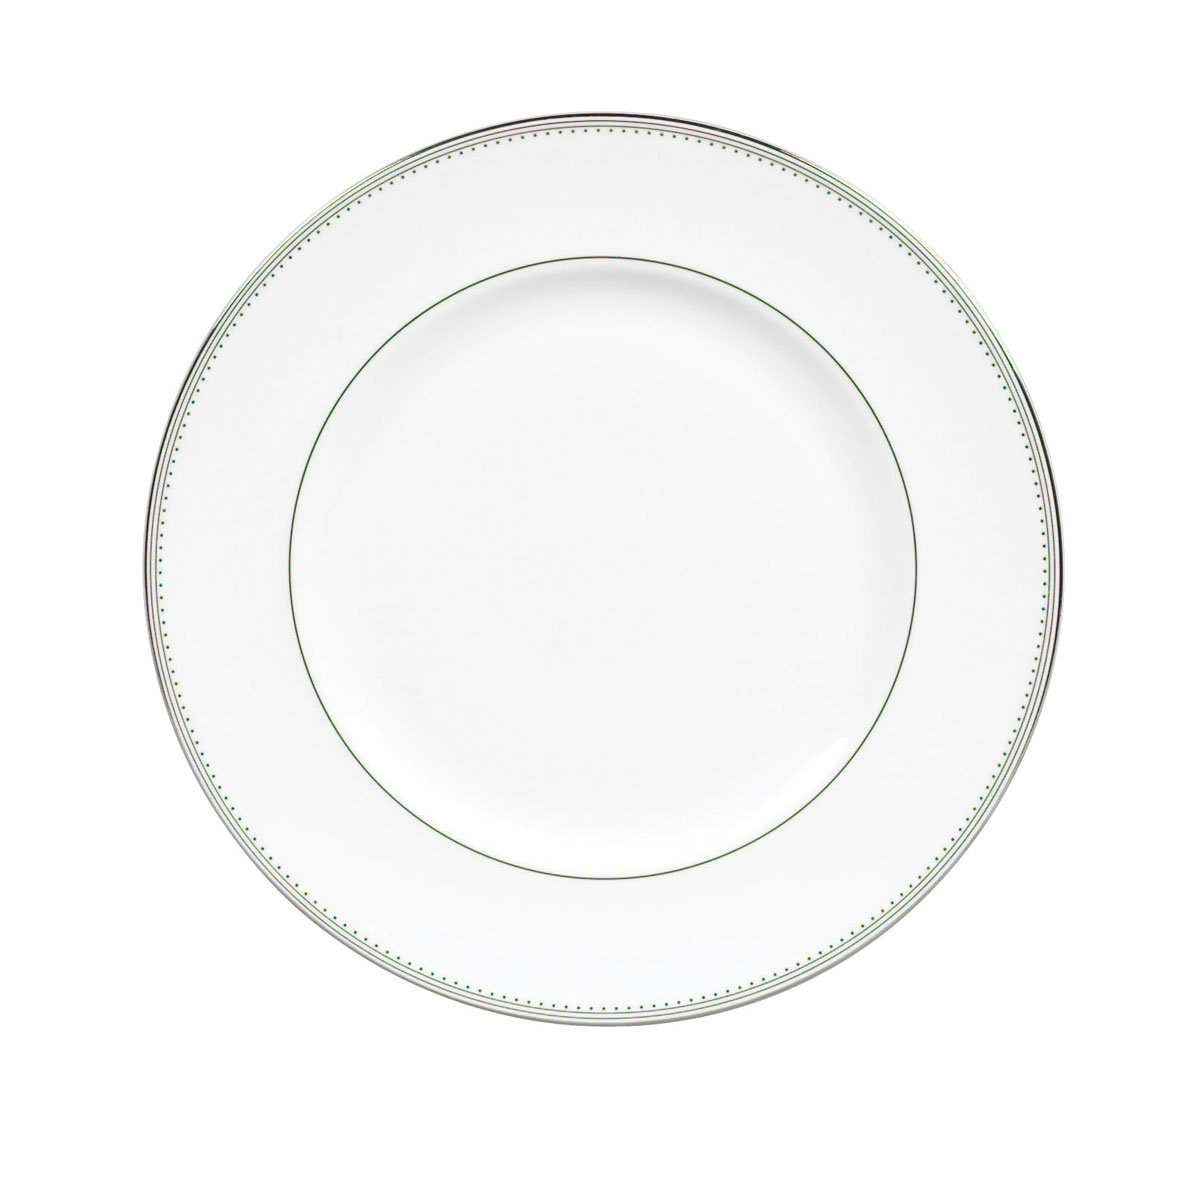 Vera Wang Wedgwood Grosgrain Dinner Plate 10.75"